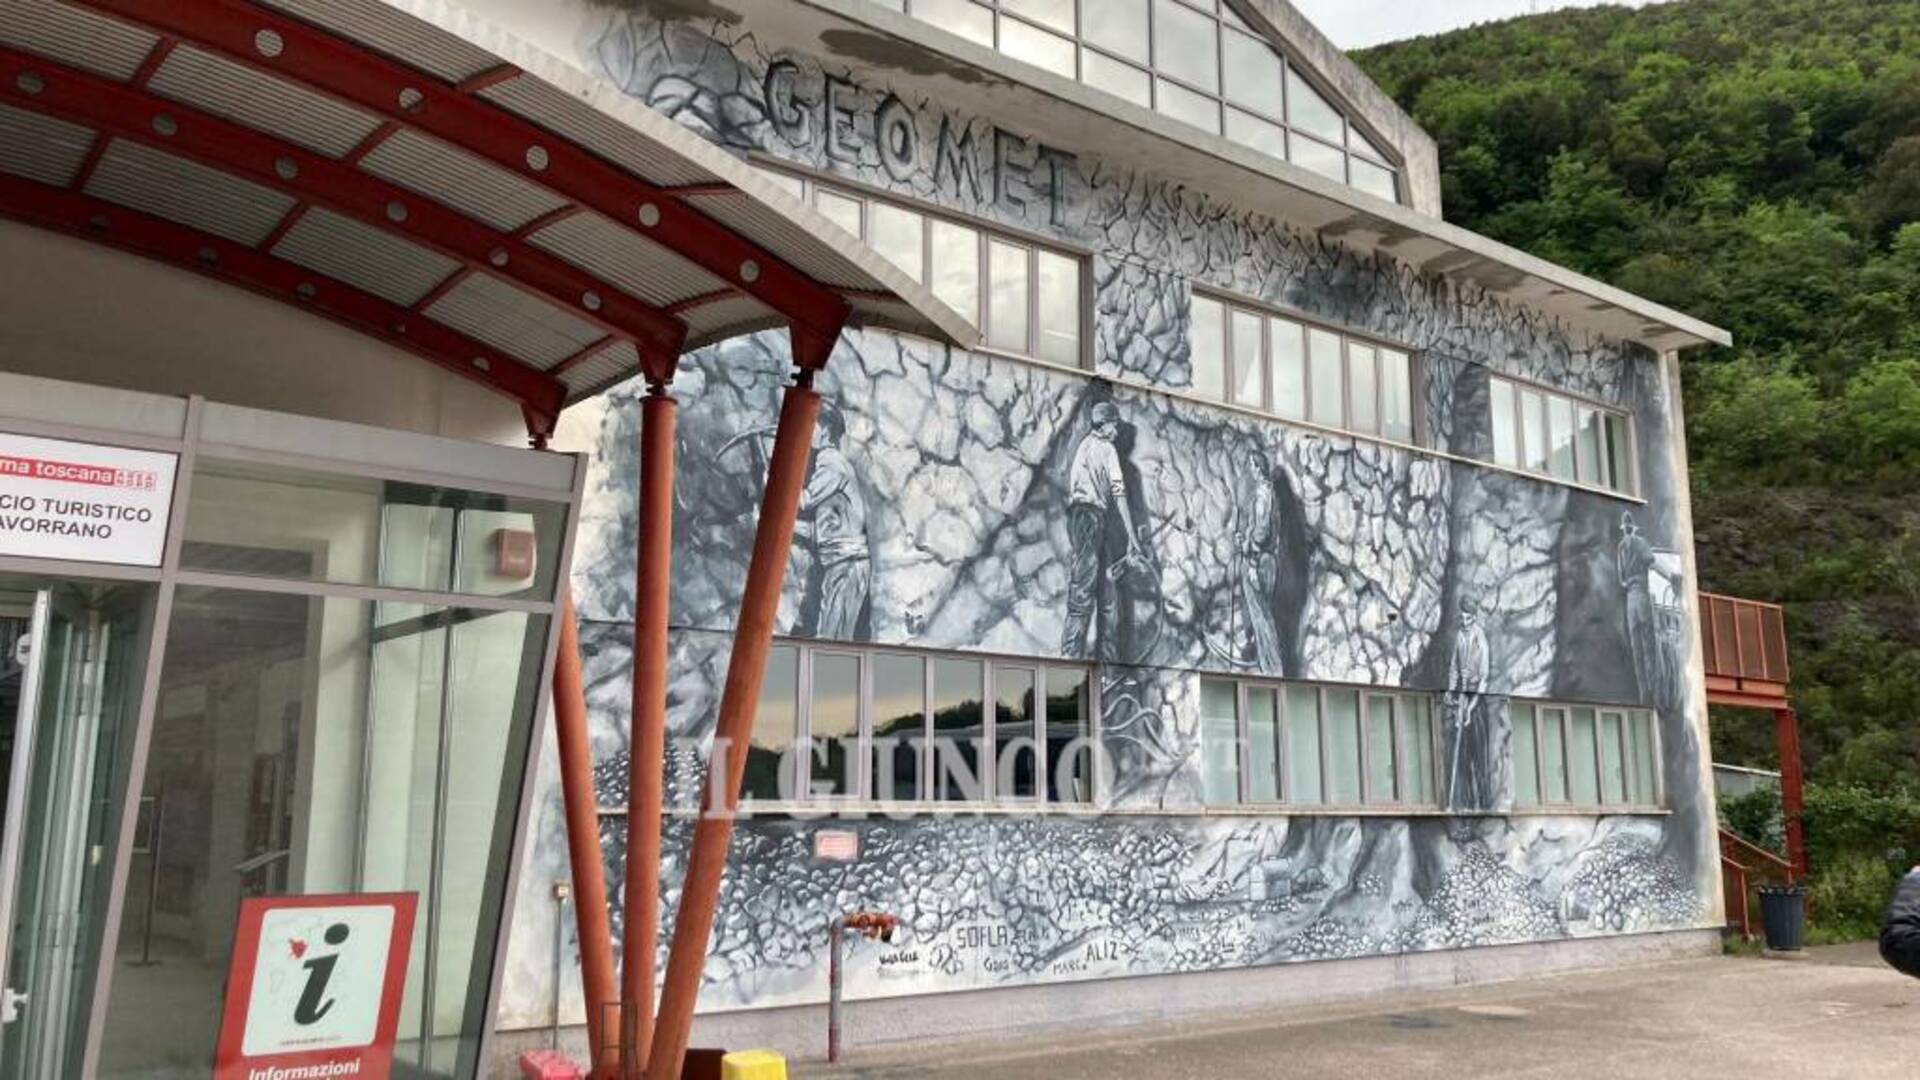 Il GeoMet è realtà: domenica l’inaugurazione del museo della geodiversità e delle miniere